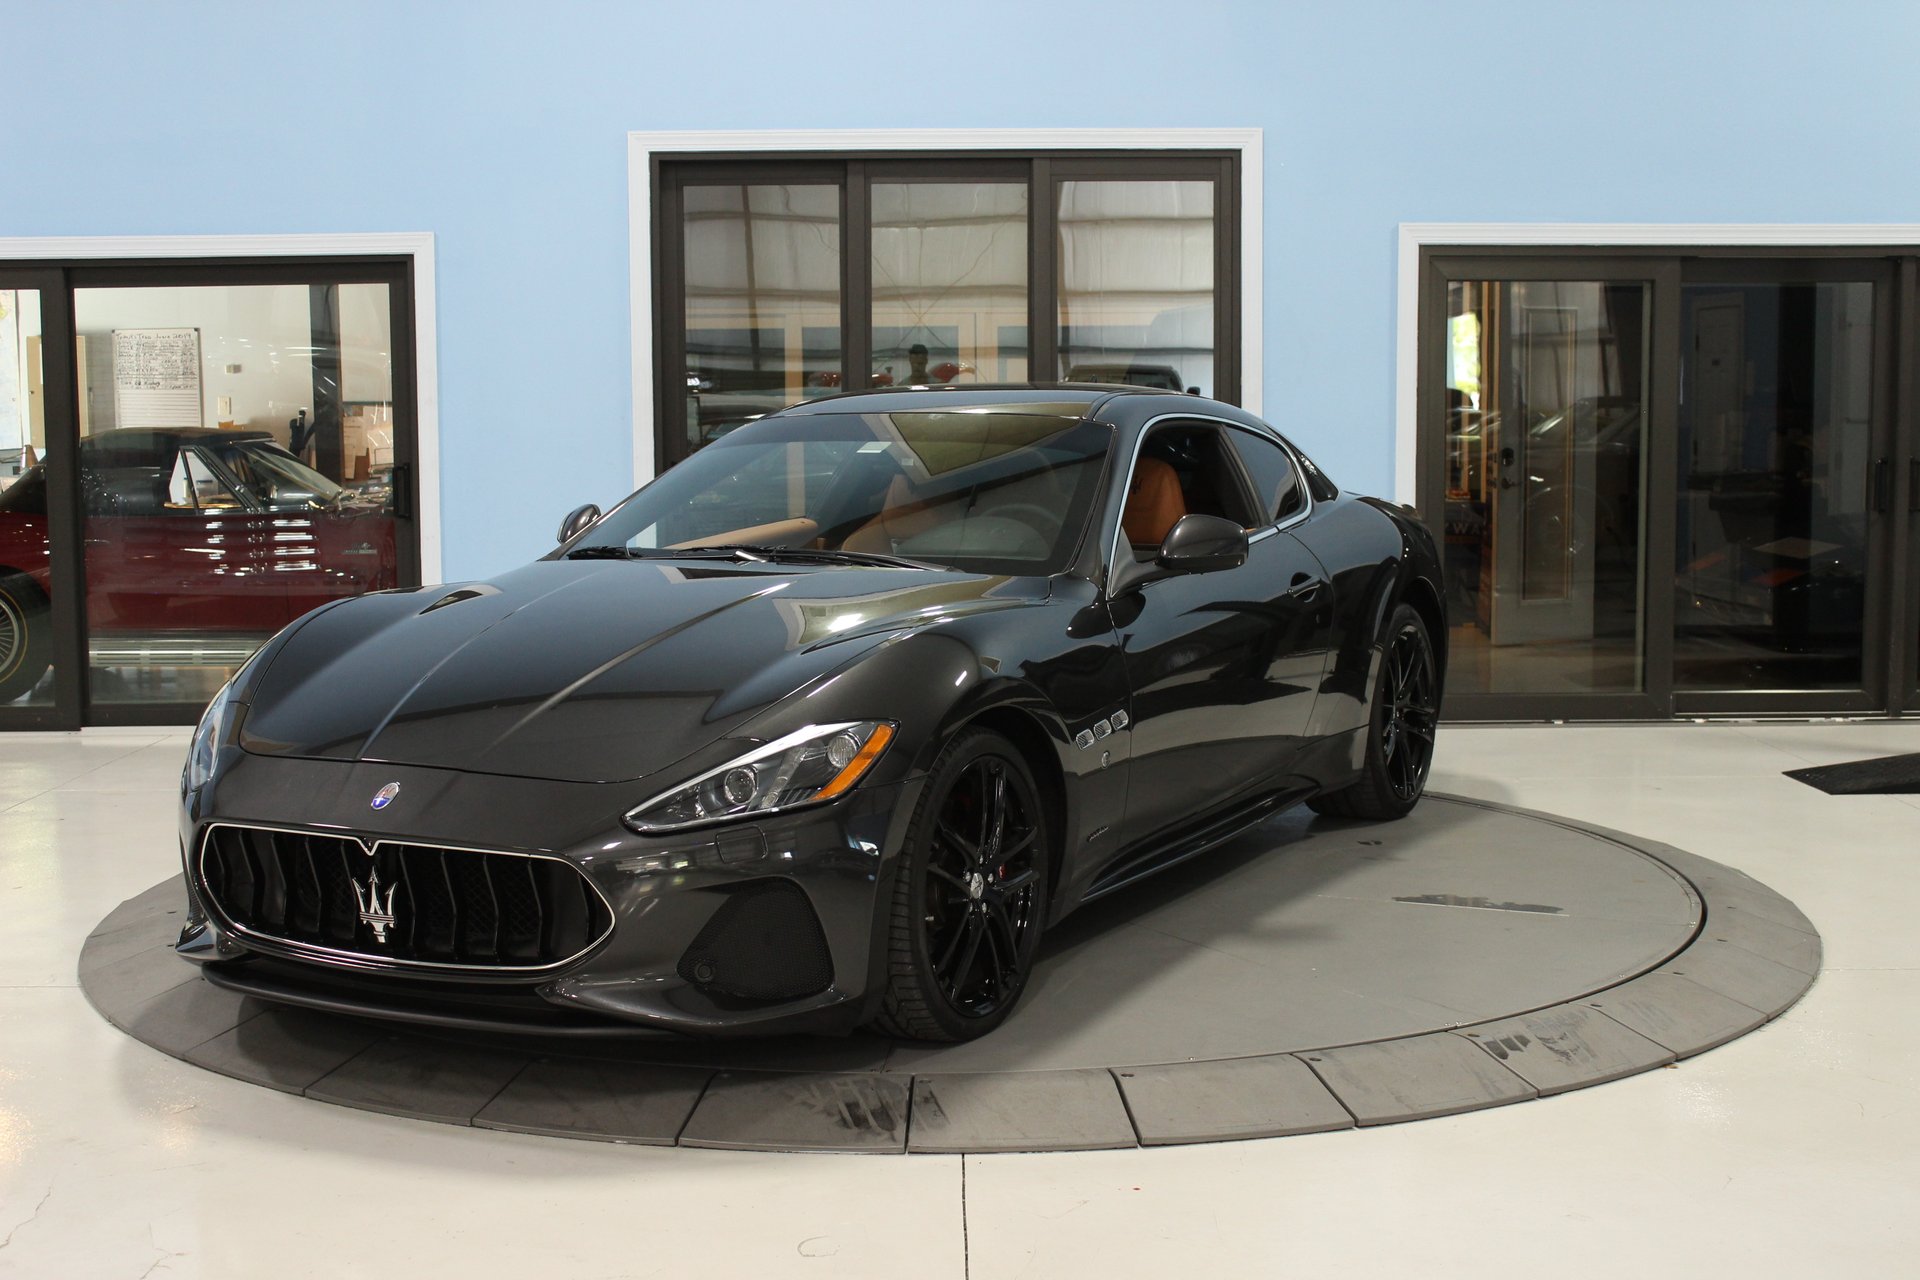 Maserati gran turismo